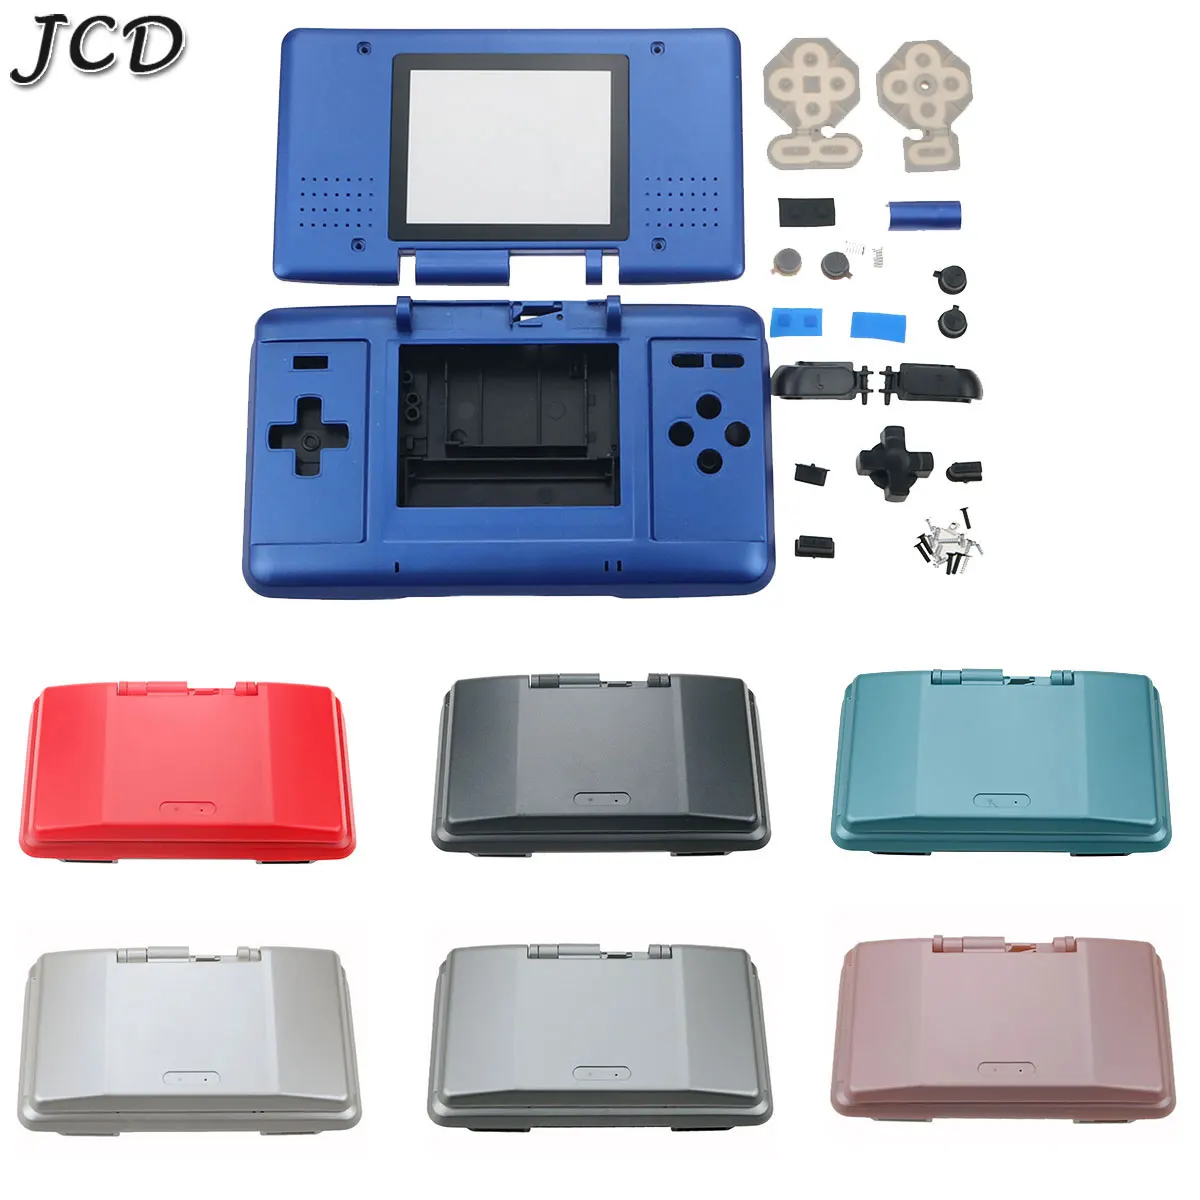 Защитный чехол JCD с кнопками для игровой консоли DS, сменный пылезащитный чехол для NDS, запчасти для ремонта